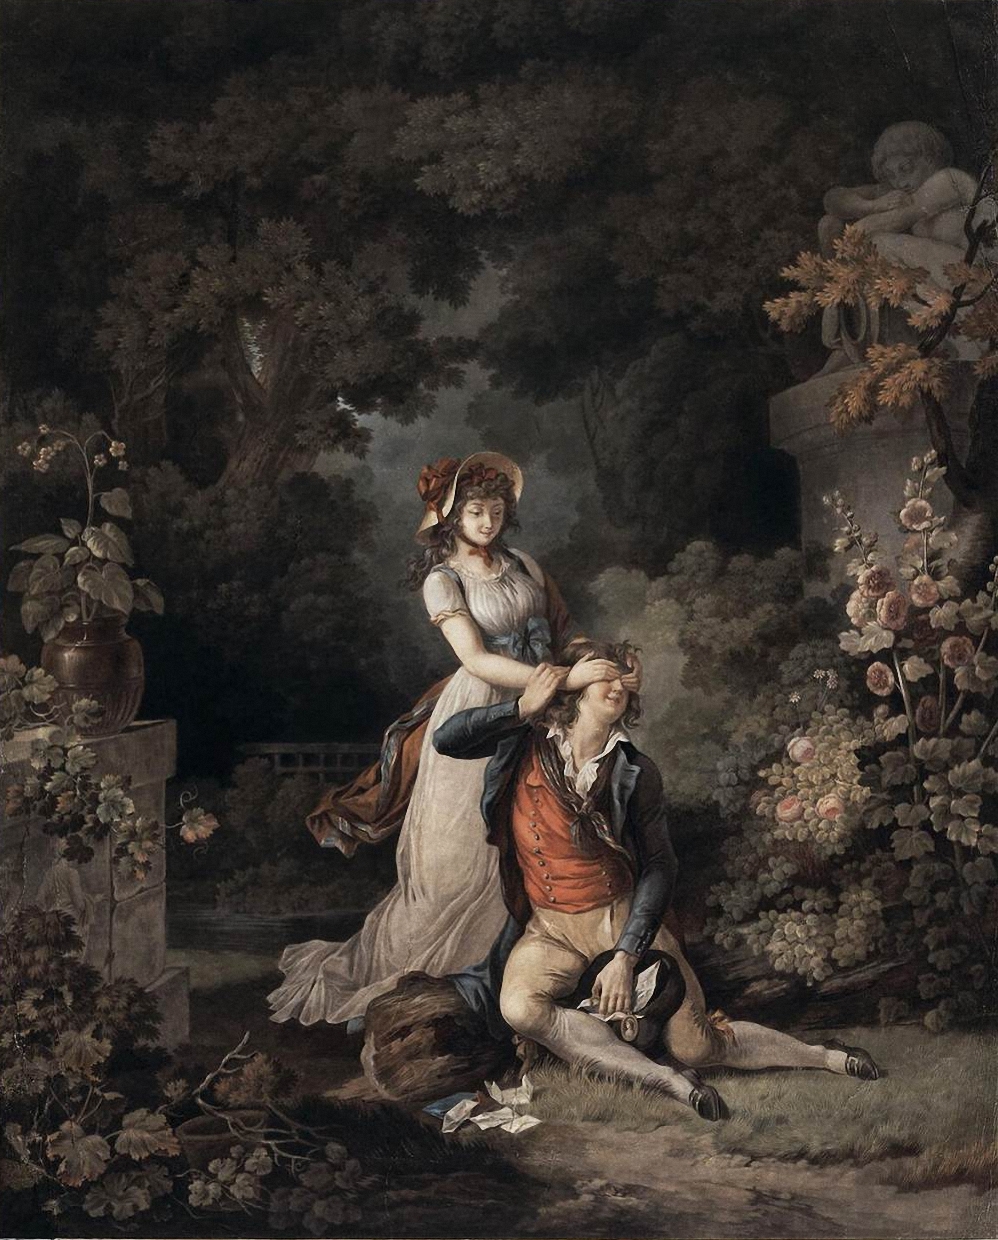 La Surprise de l'Amour by Charles-Melchior Descourtis